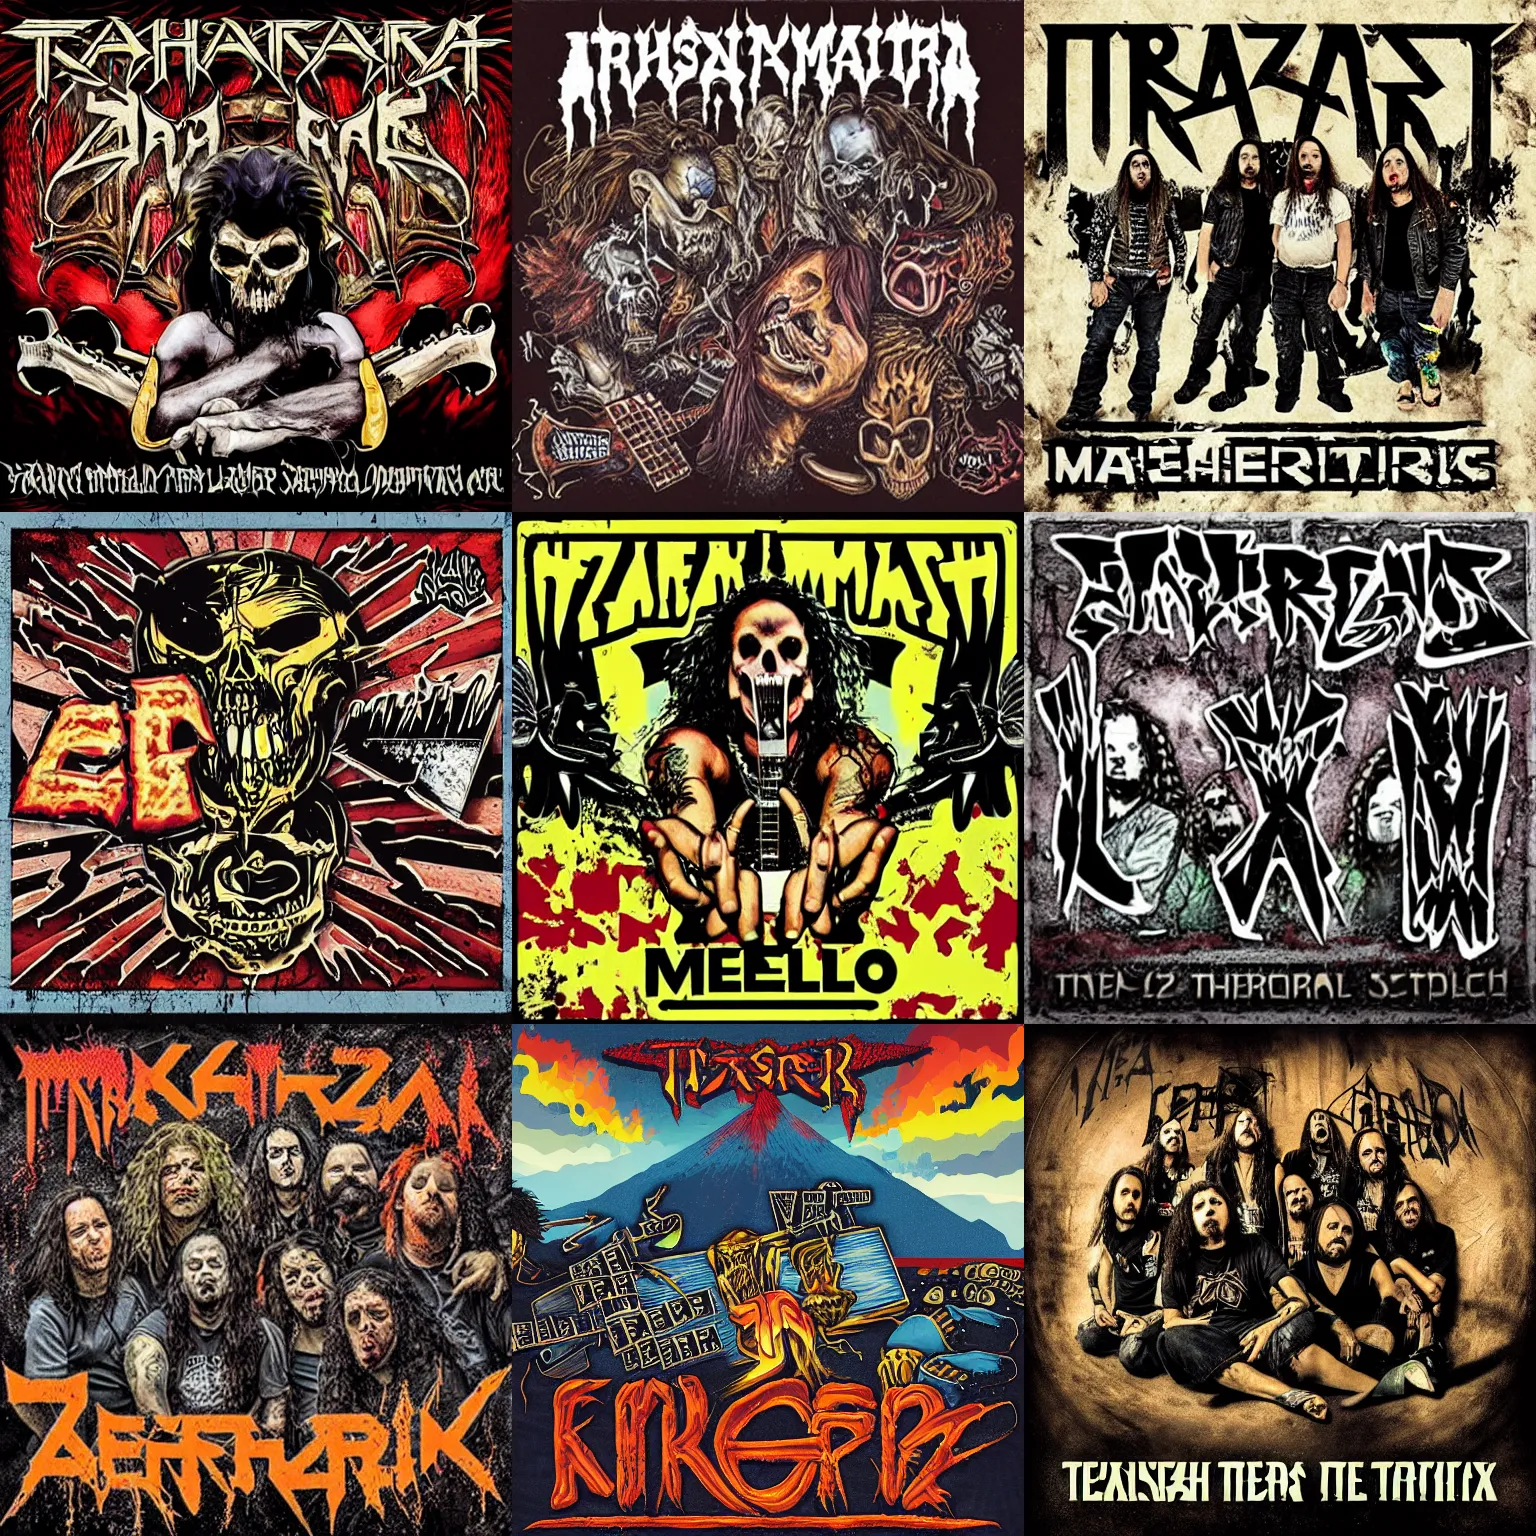 Prompt: thrash metal album